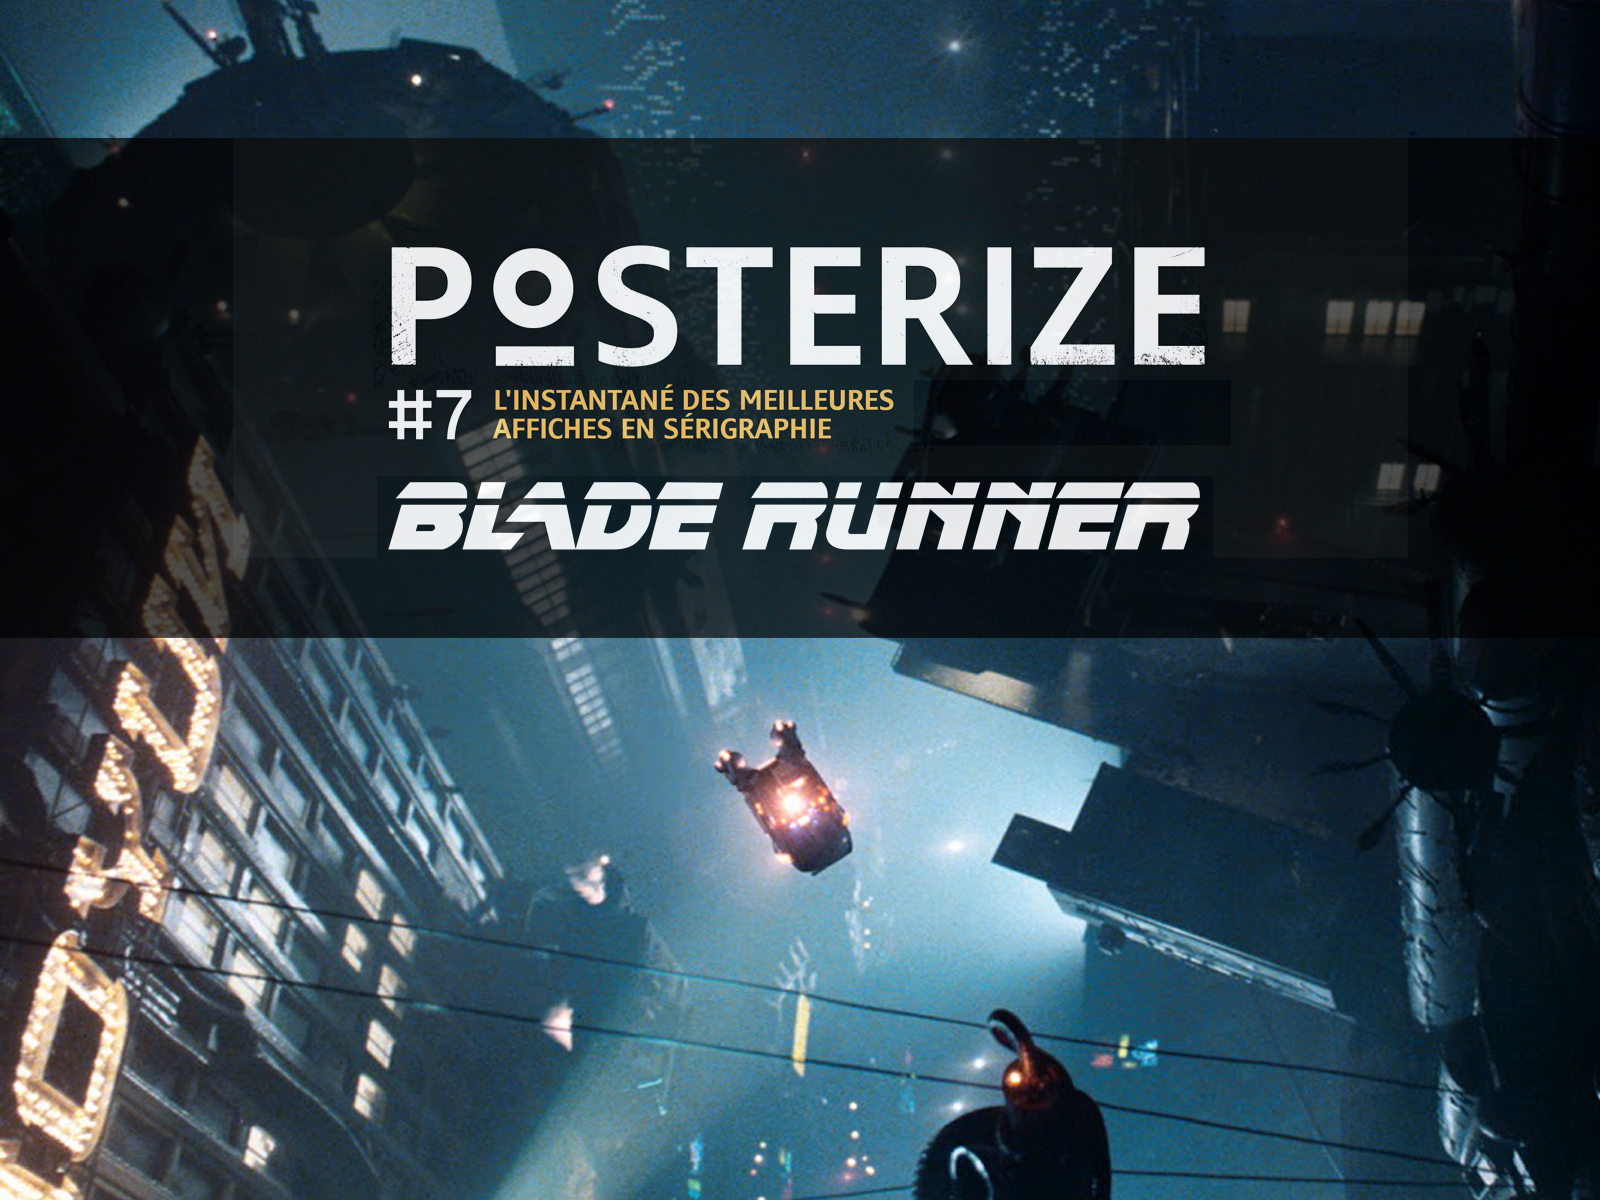 Les plus belles affiches imprimées en sérigraphie en hommage au film Blade Runner